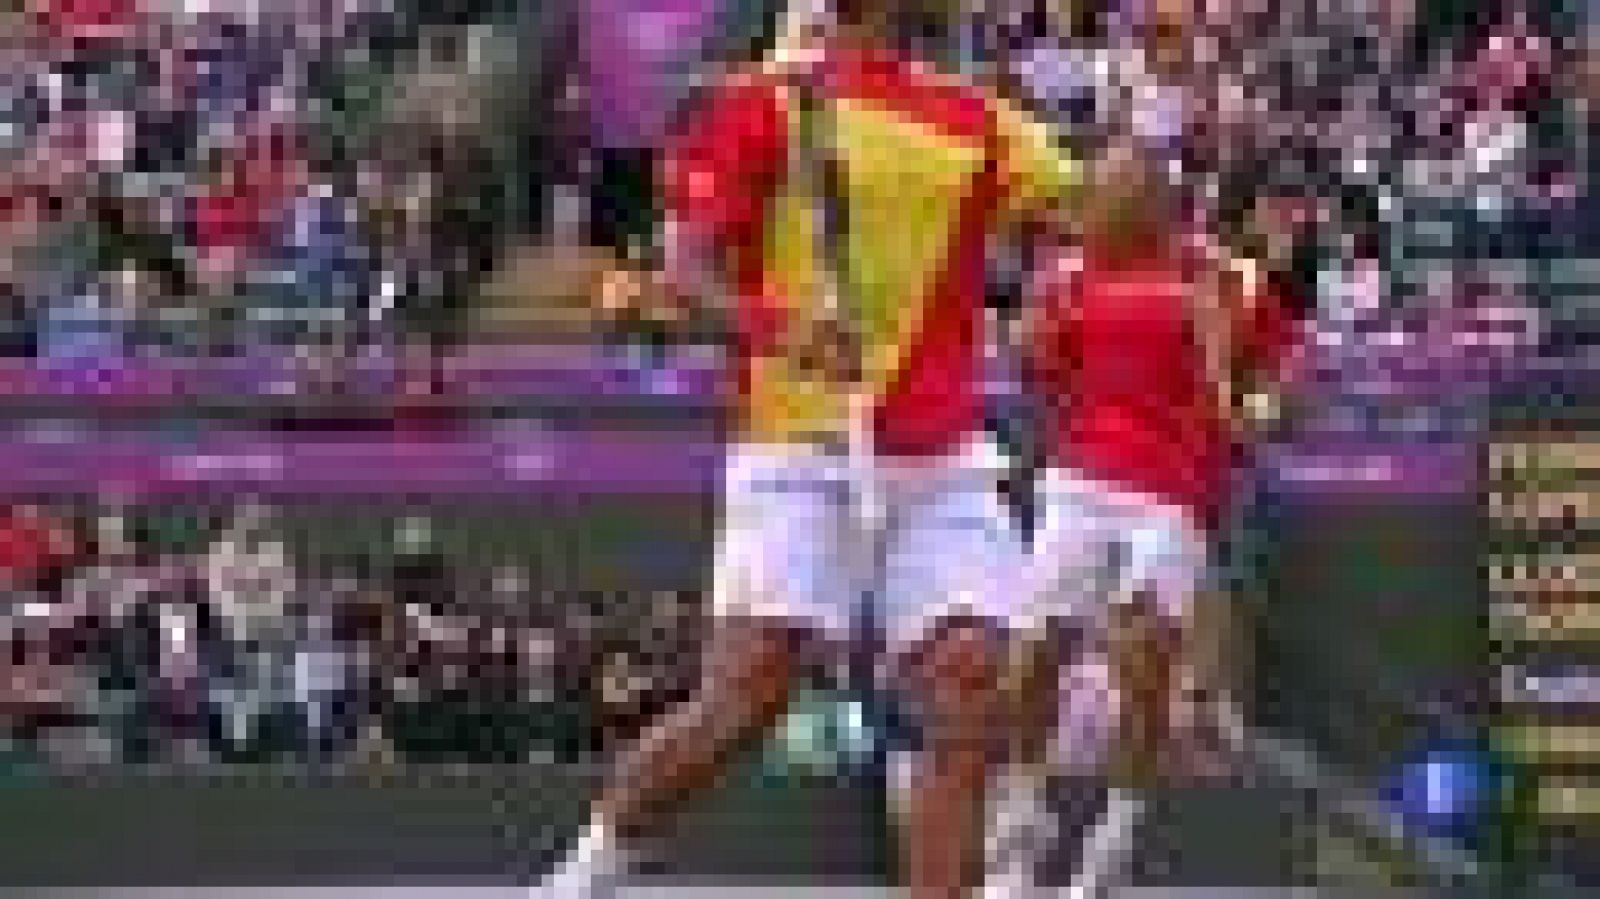 La pareja de dobles española, formada por Ferrer y Feliciano, ha caído derrotada en las semifinales de Londres 2012 ante la pareja francesa formada por Tsonga y Llodra, y tendrá que jugarse la medalla de bronce ante los también franceses Benneteau y 